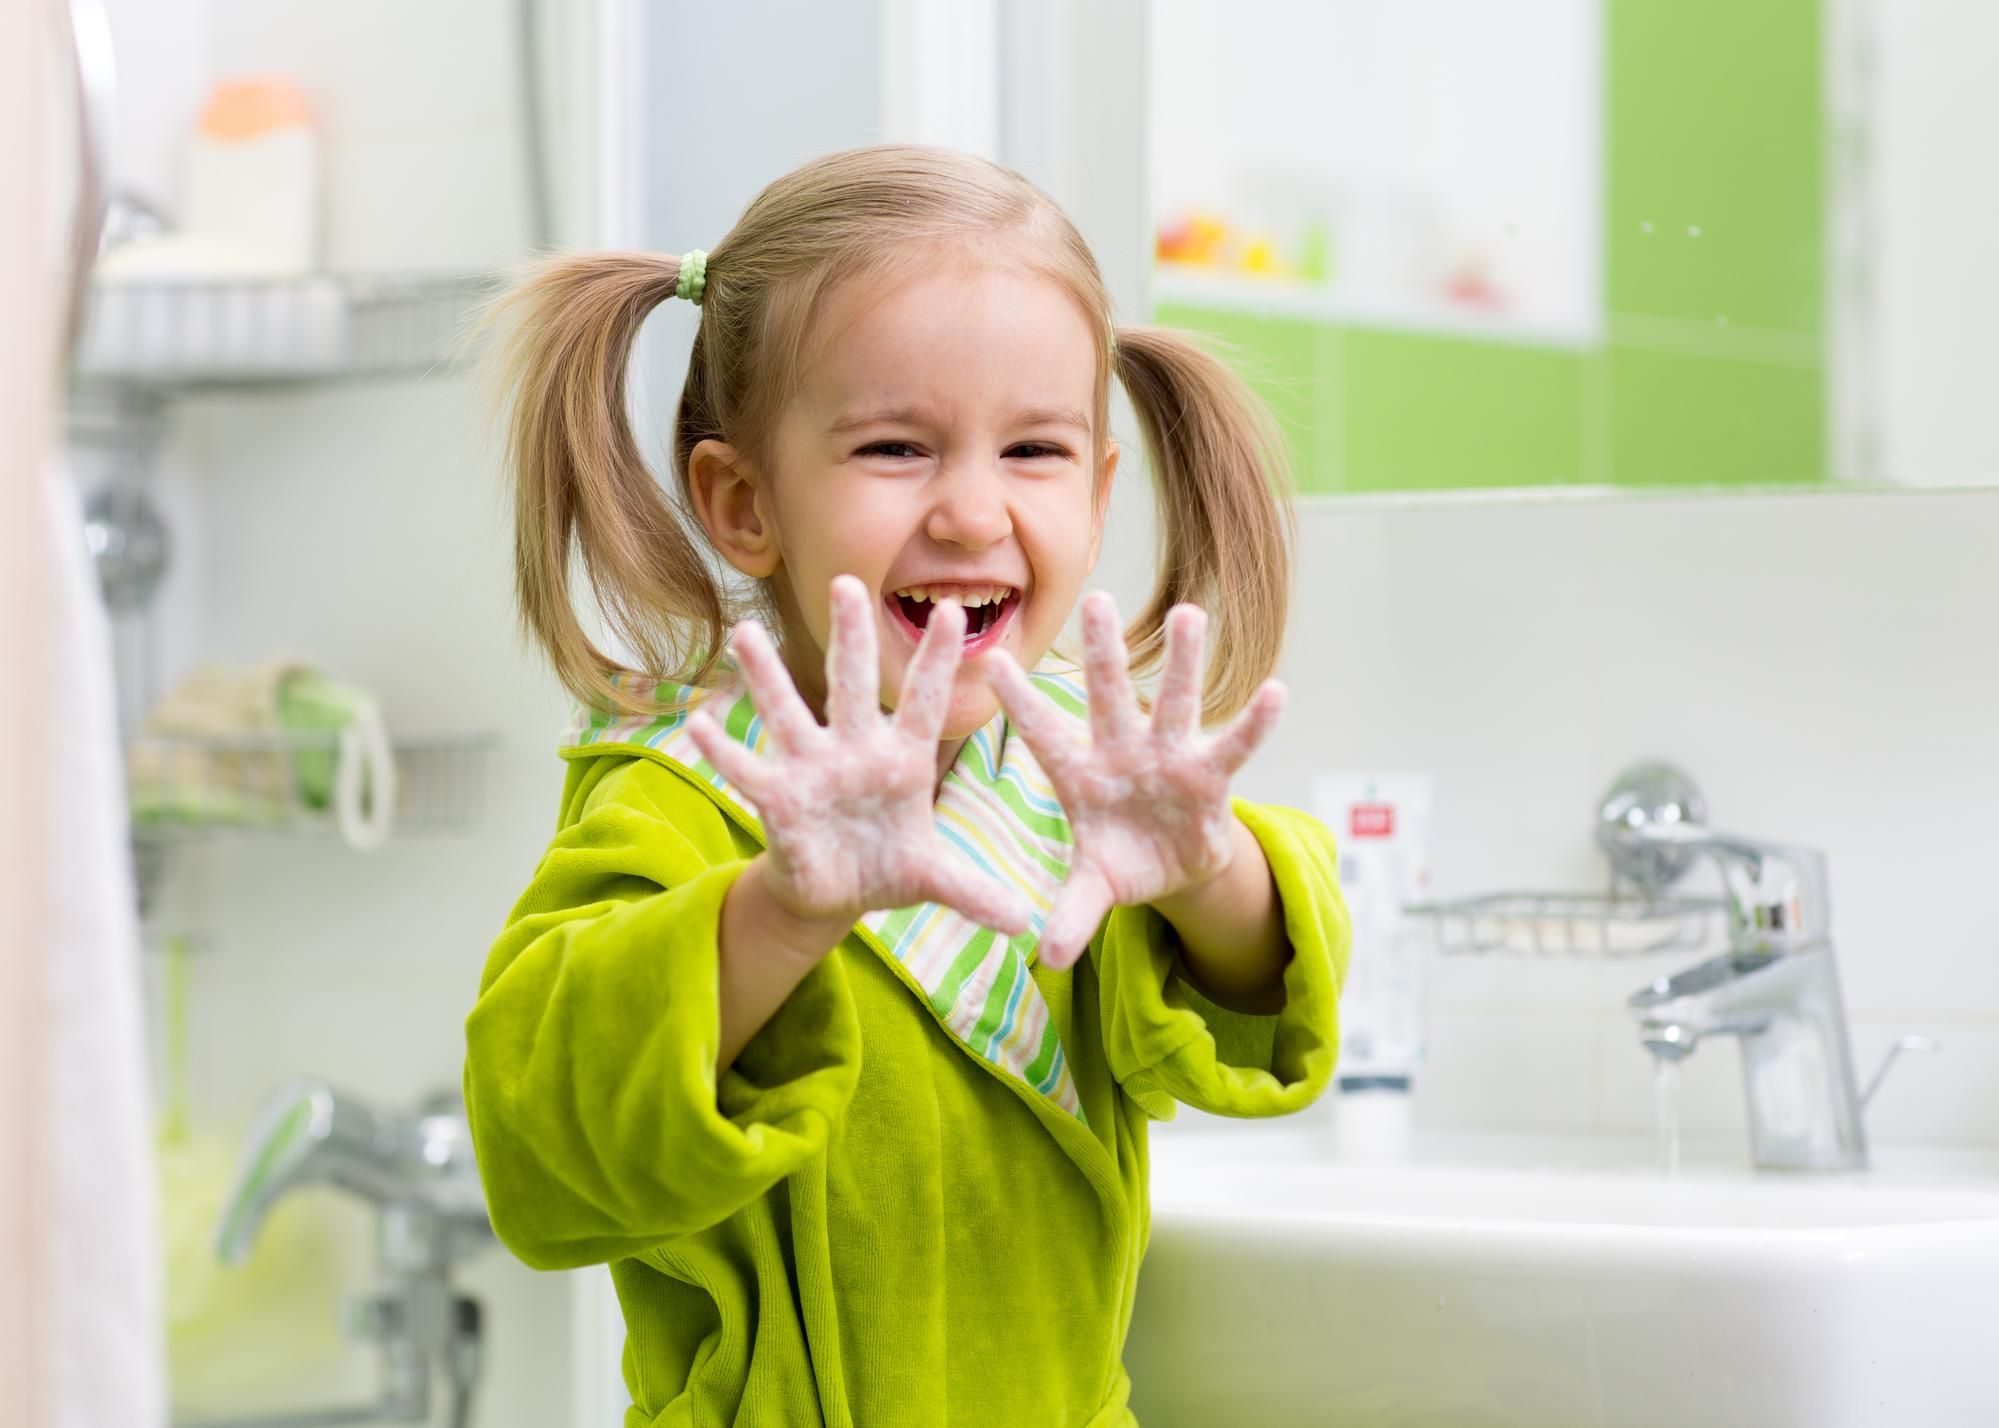 Мама и учительница придумали интересный способ проверить, хорошо ли дети моют руки: фото